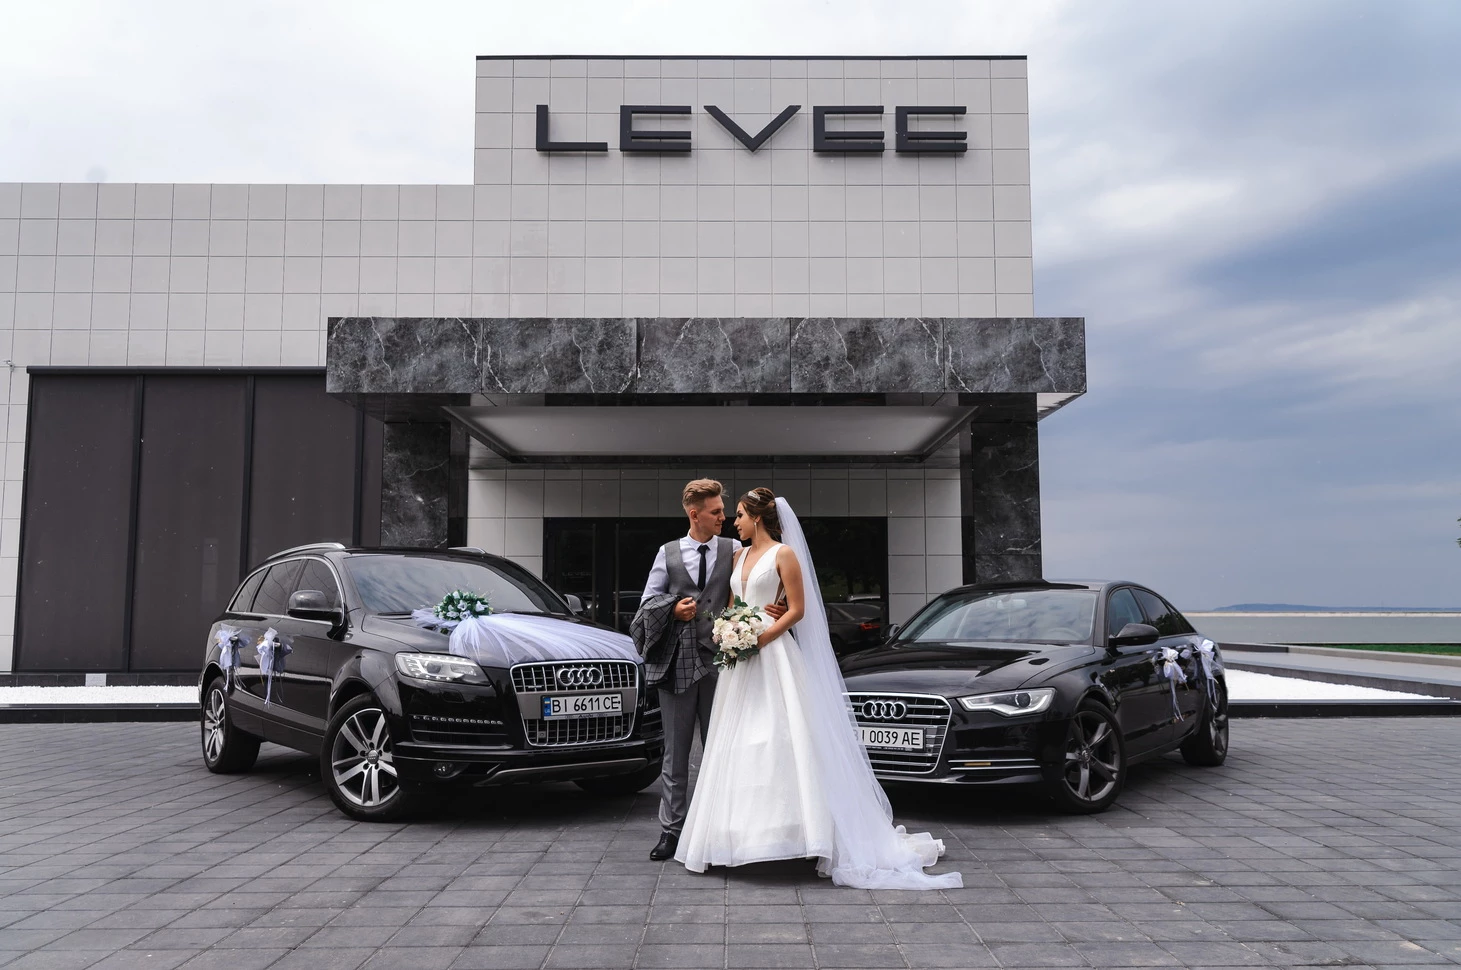 Закохана пара у весільних вбраннях позує на фотографії між двома шикарними Audi, з рестораном Levee, місцем святкування, на задньому плані.